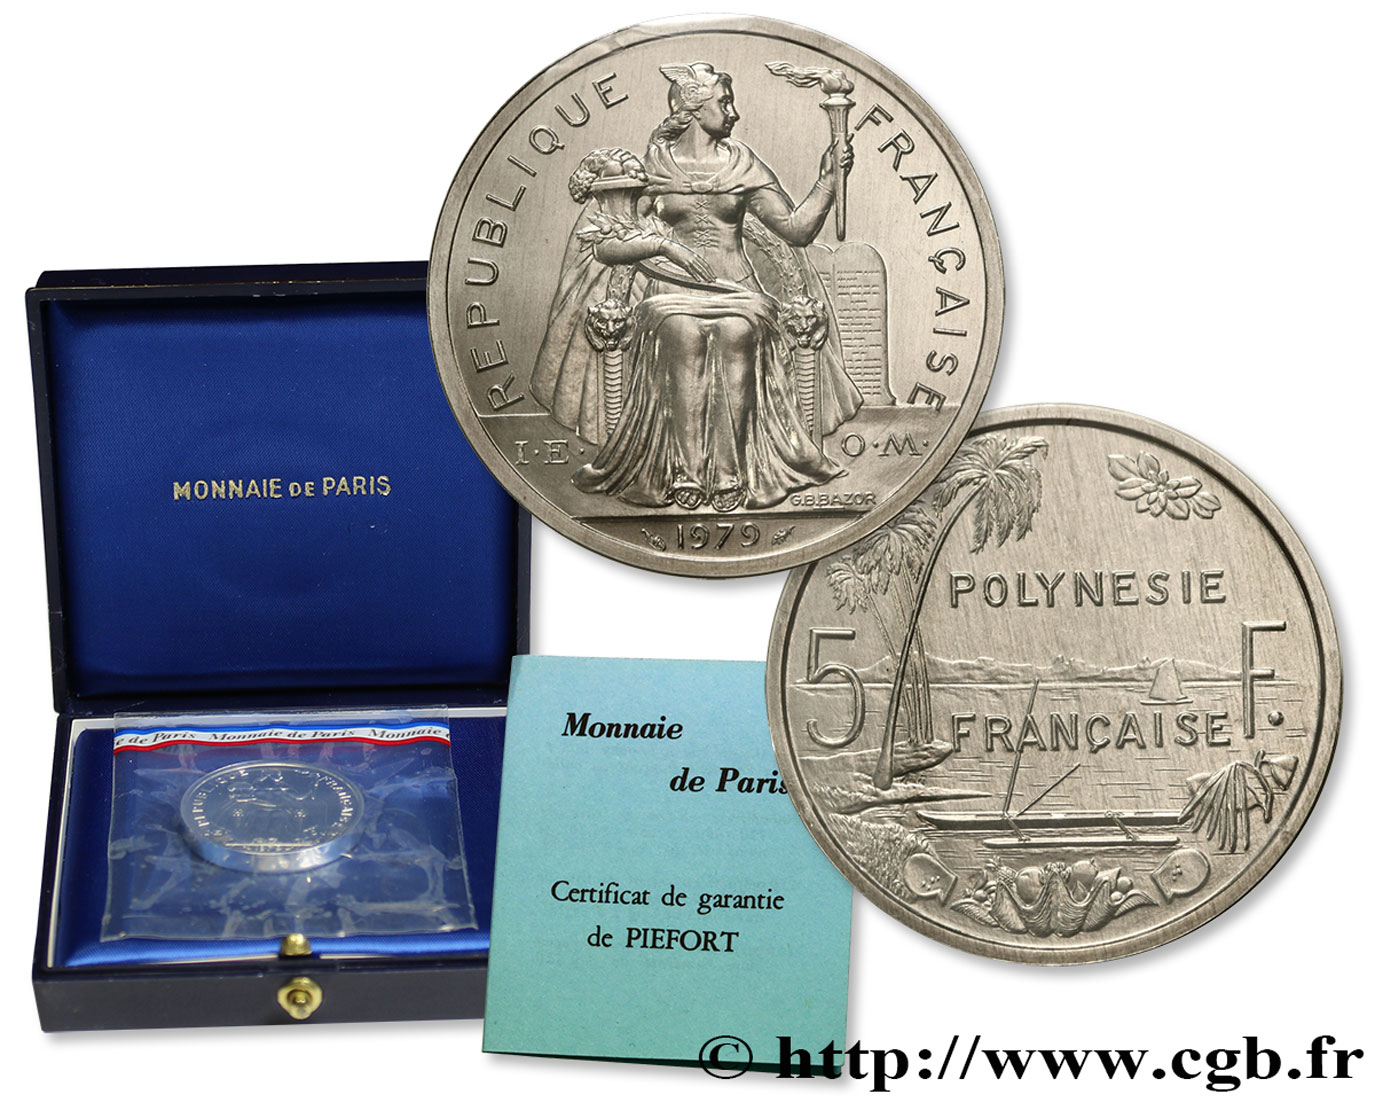 FRENCH POLYNESIA Piéfort de 5 Francs I.E.O.M. 1979 Paris MS 